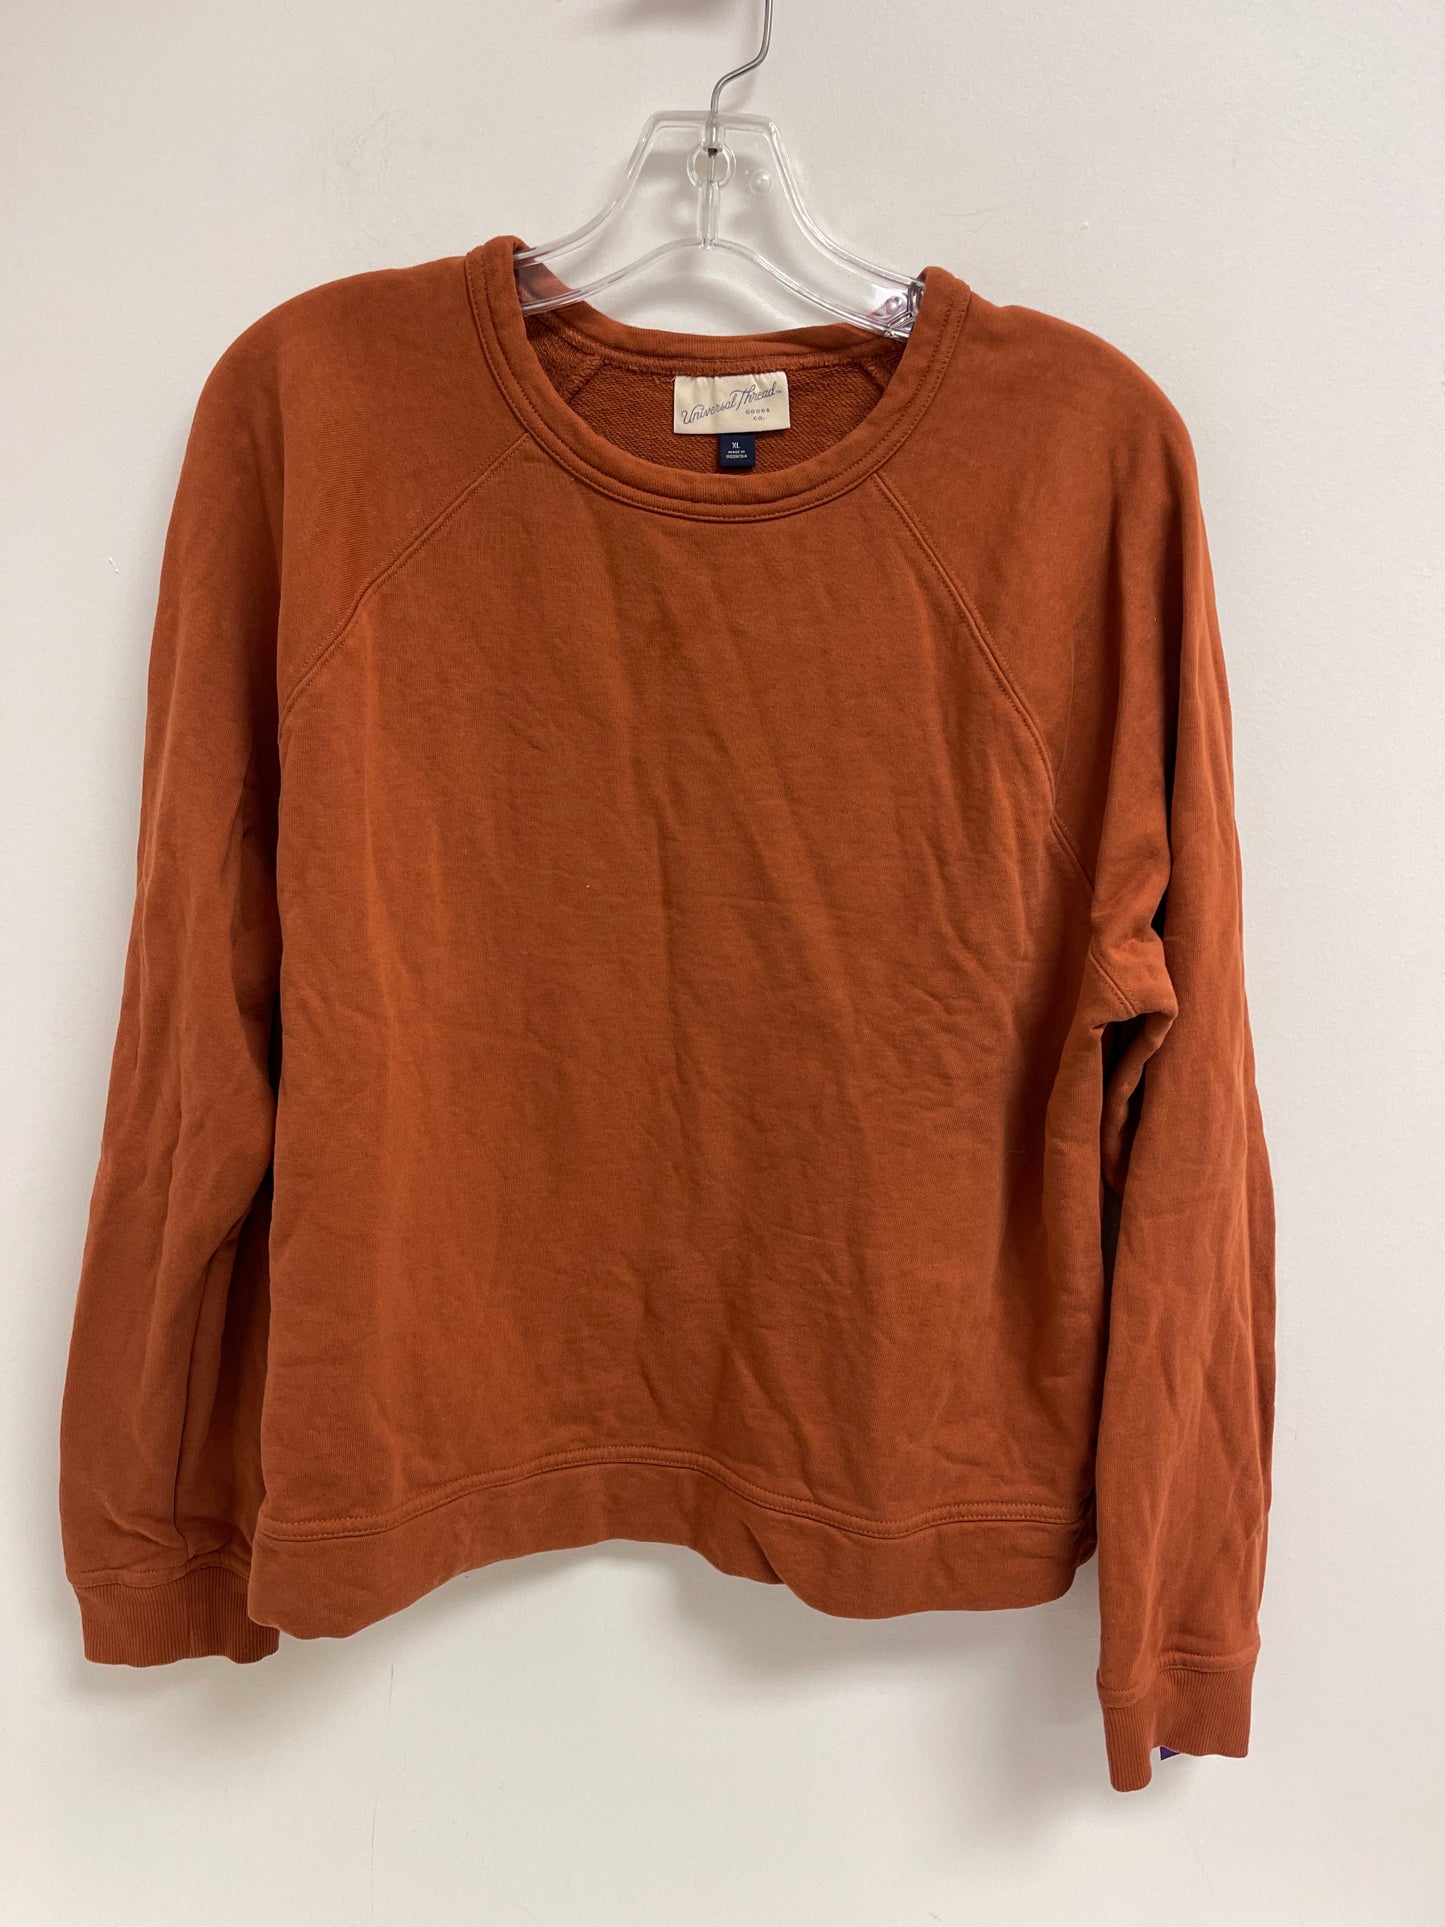 Orange Sweater Universal Thread, Size Xl